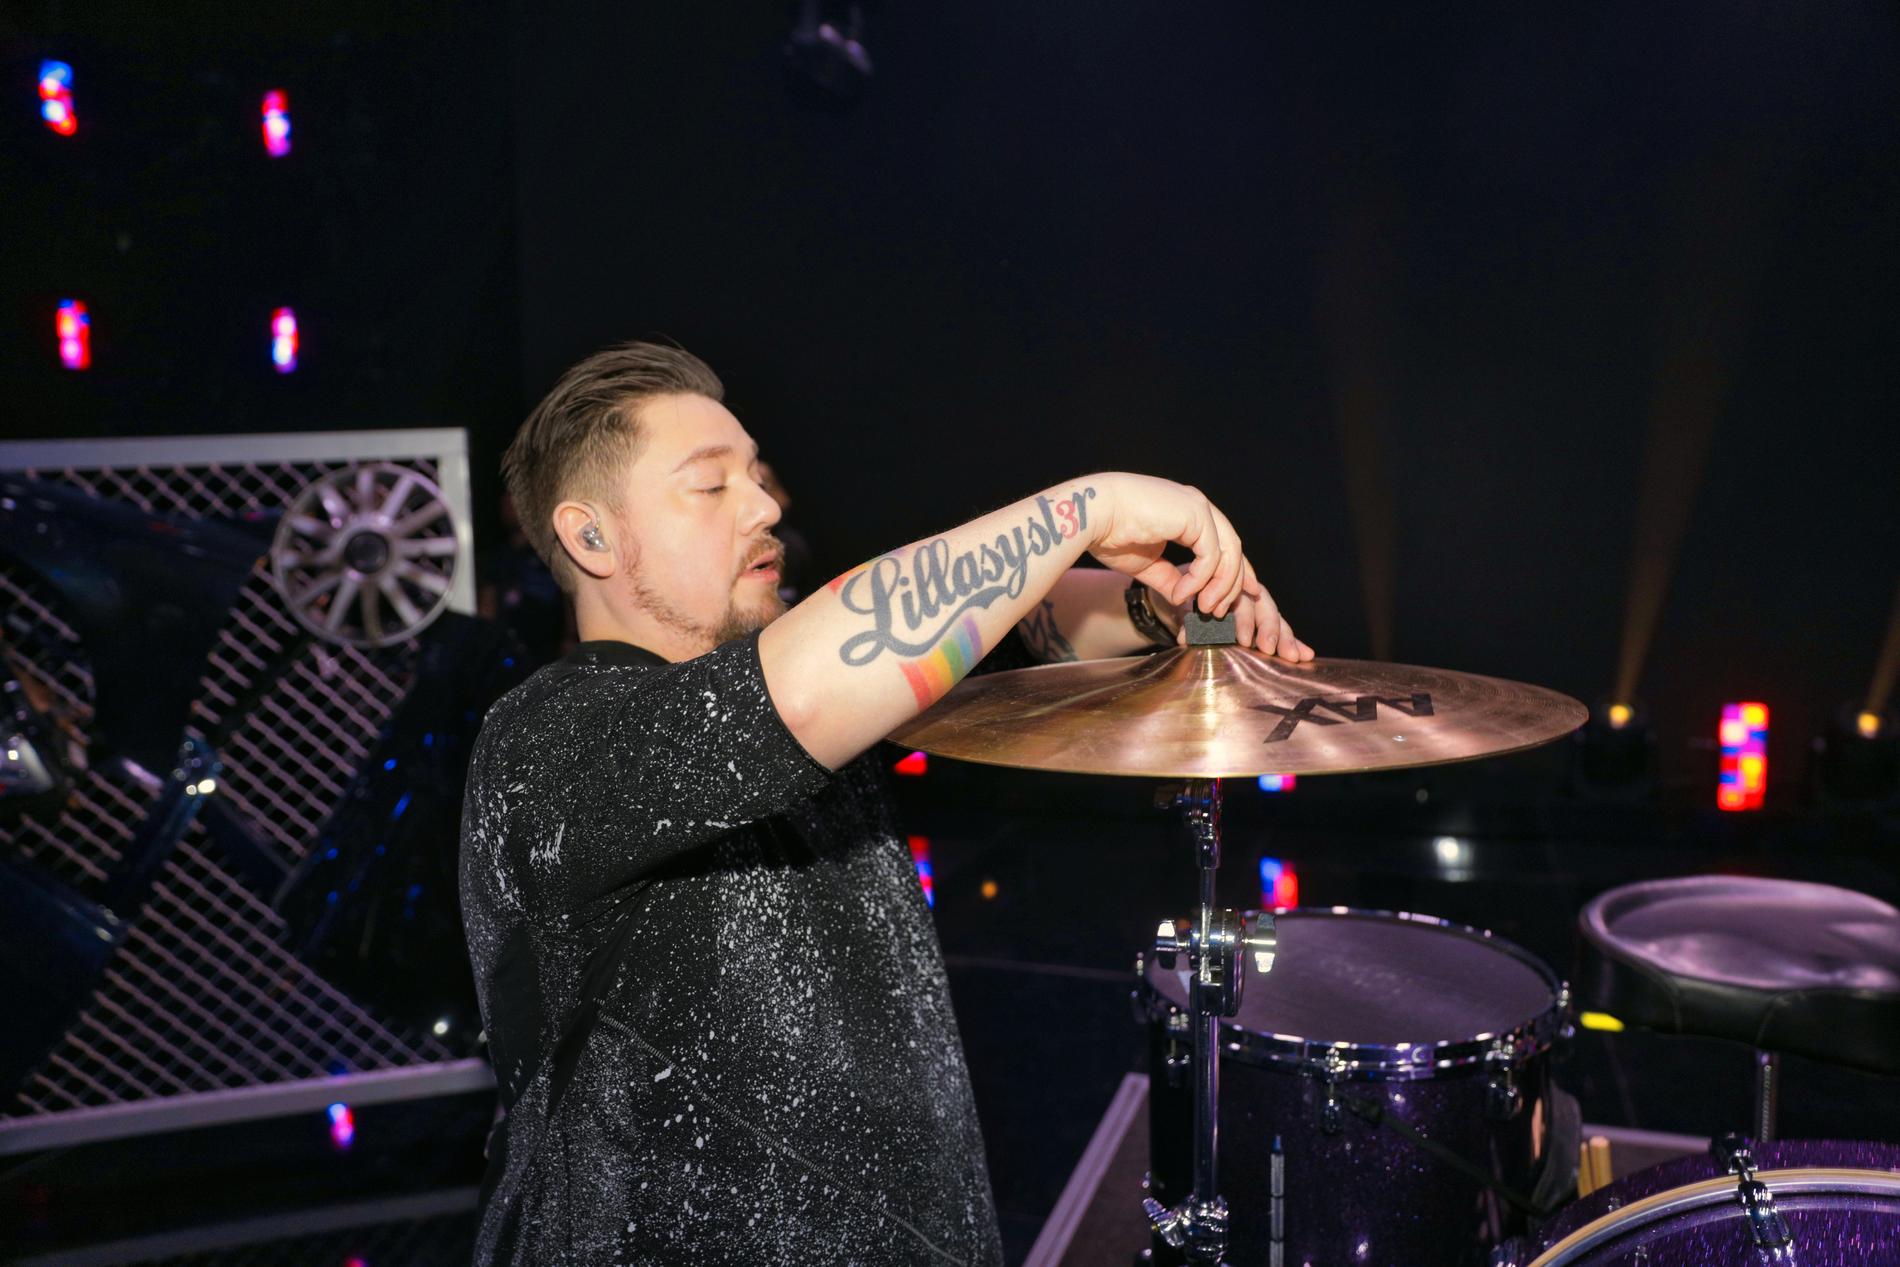 Lillasysters trummis Ian-Paolo Lira med sin nya tatuering i regnbågsfärger: ”En provokation mot trångsynthet. Det känns lite punk”.